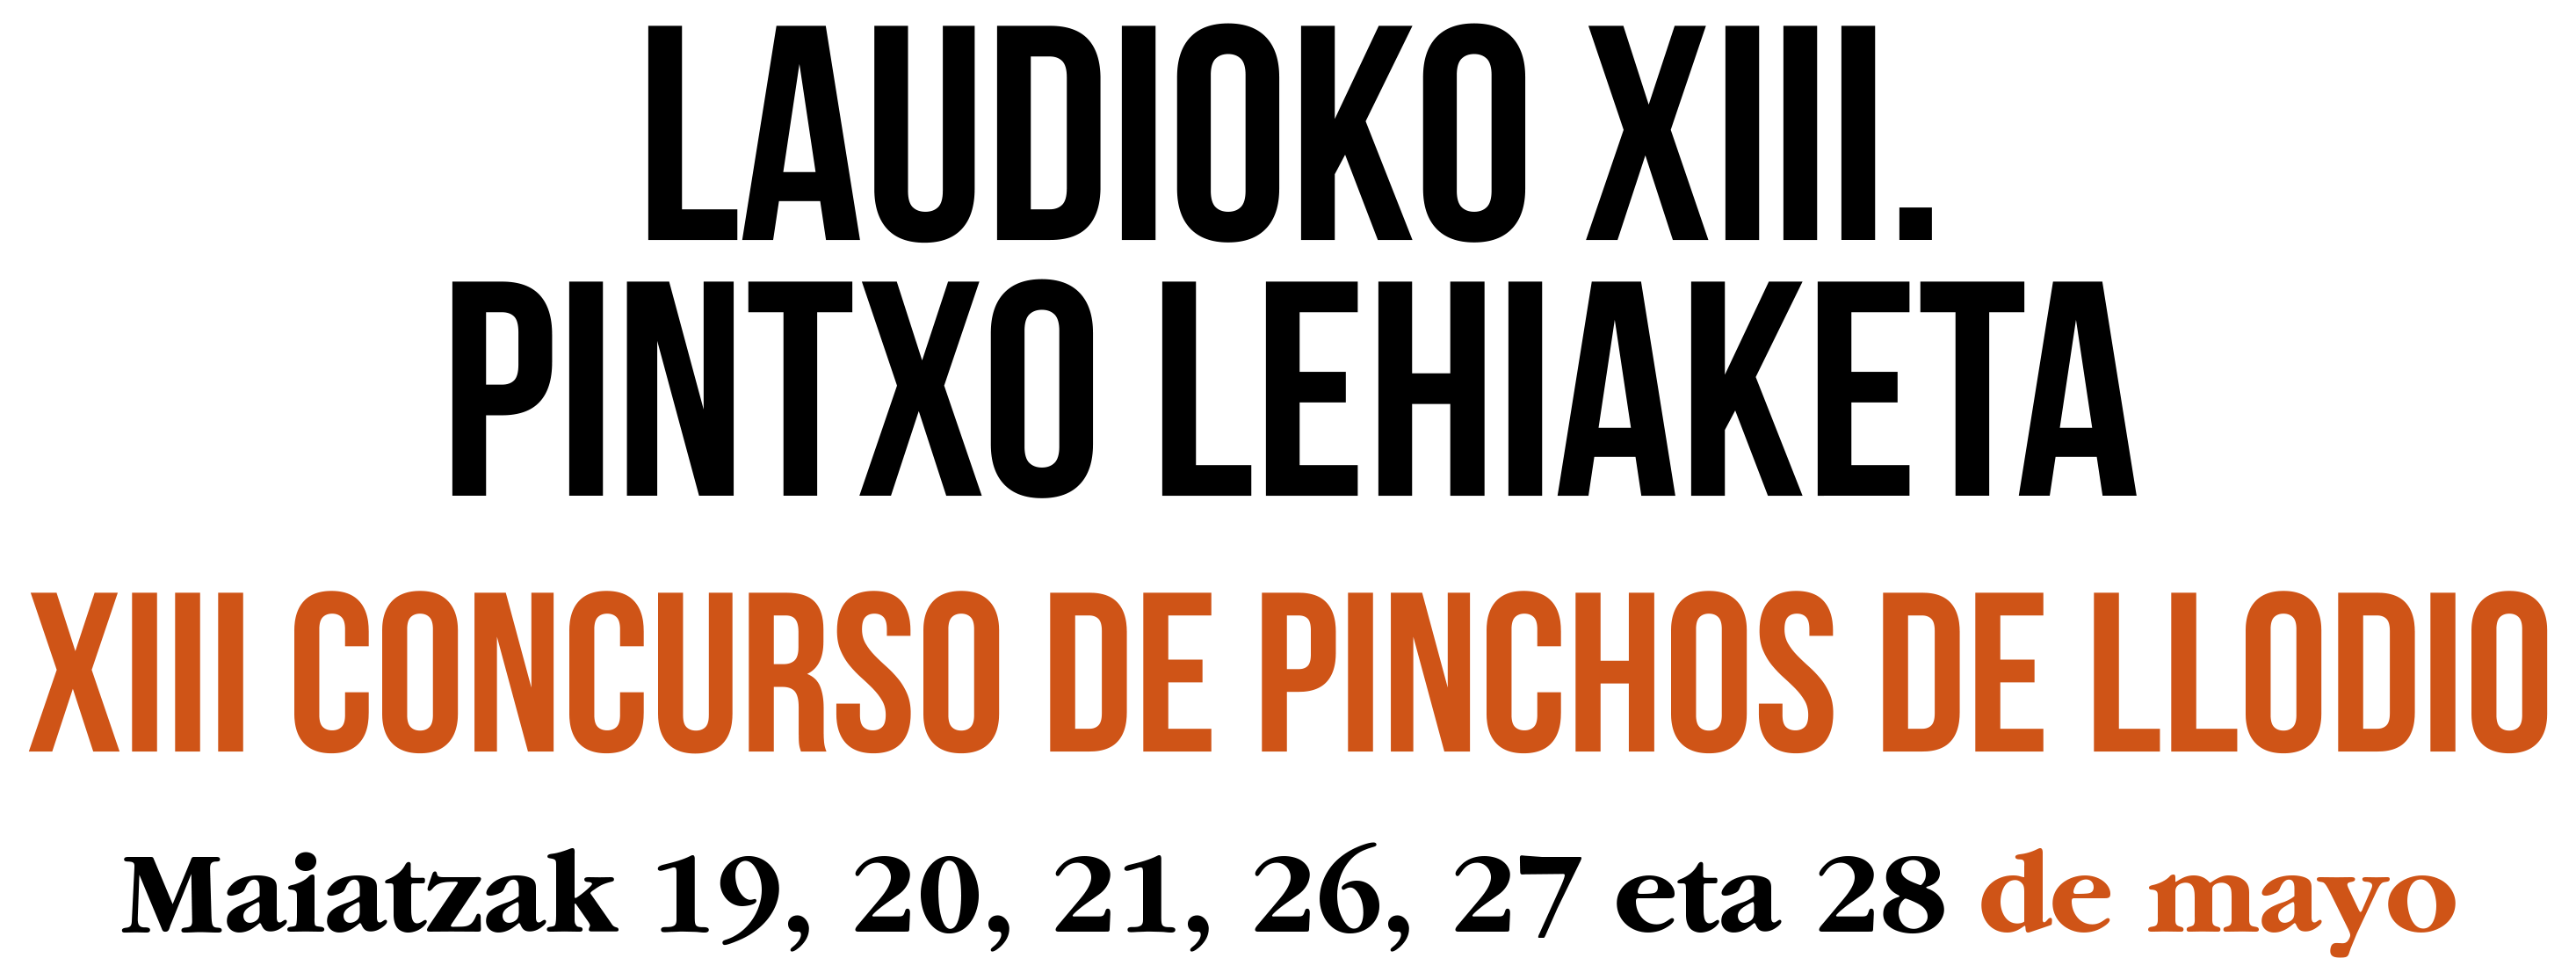 XIII Concurso de Pinchos